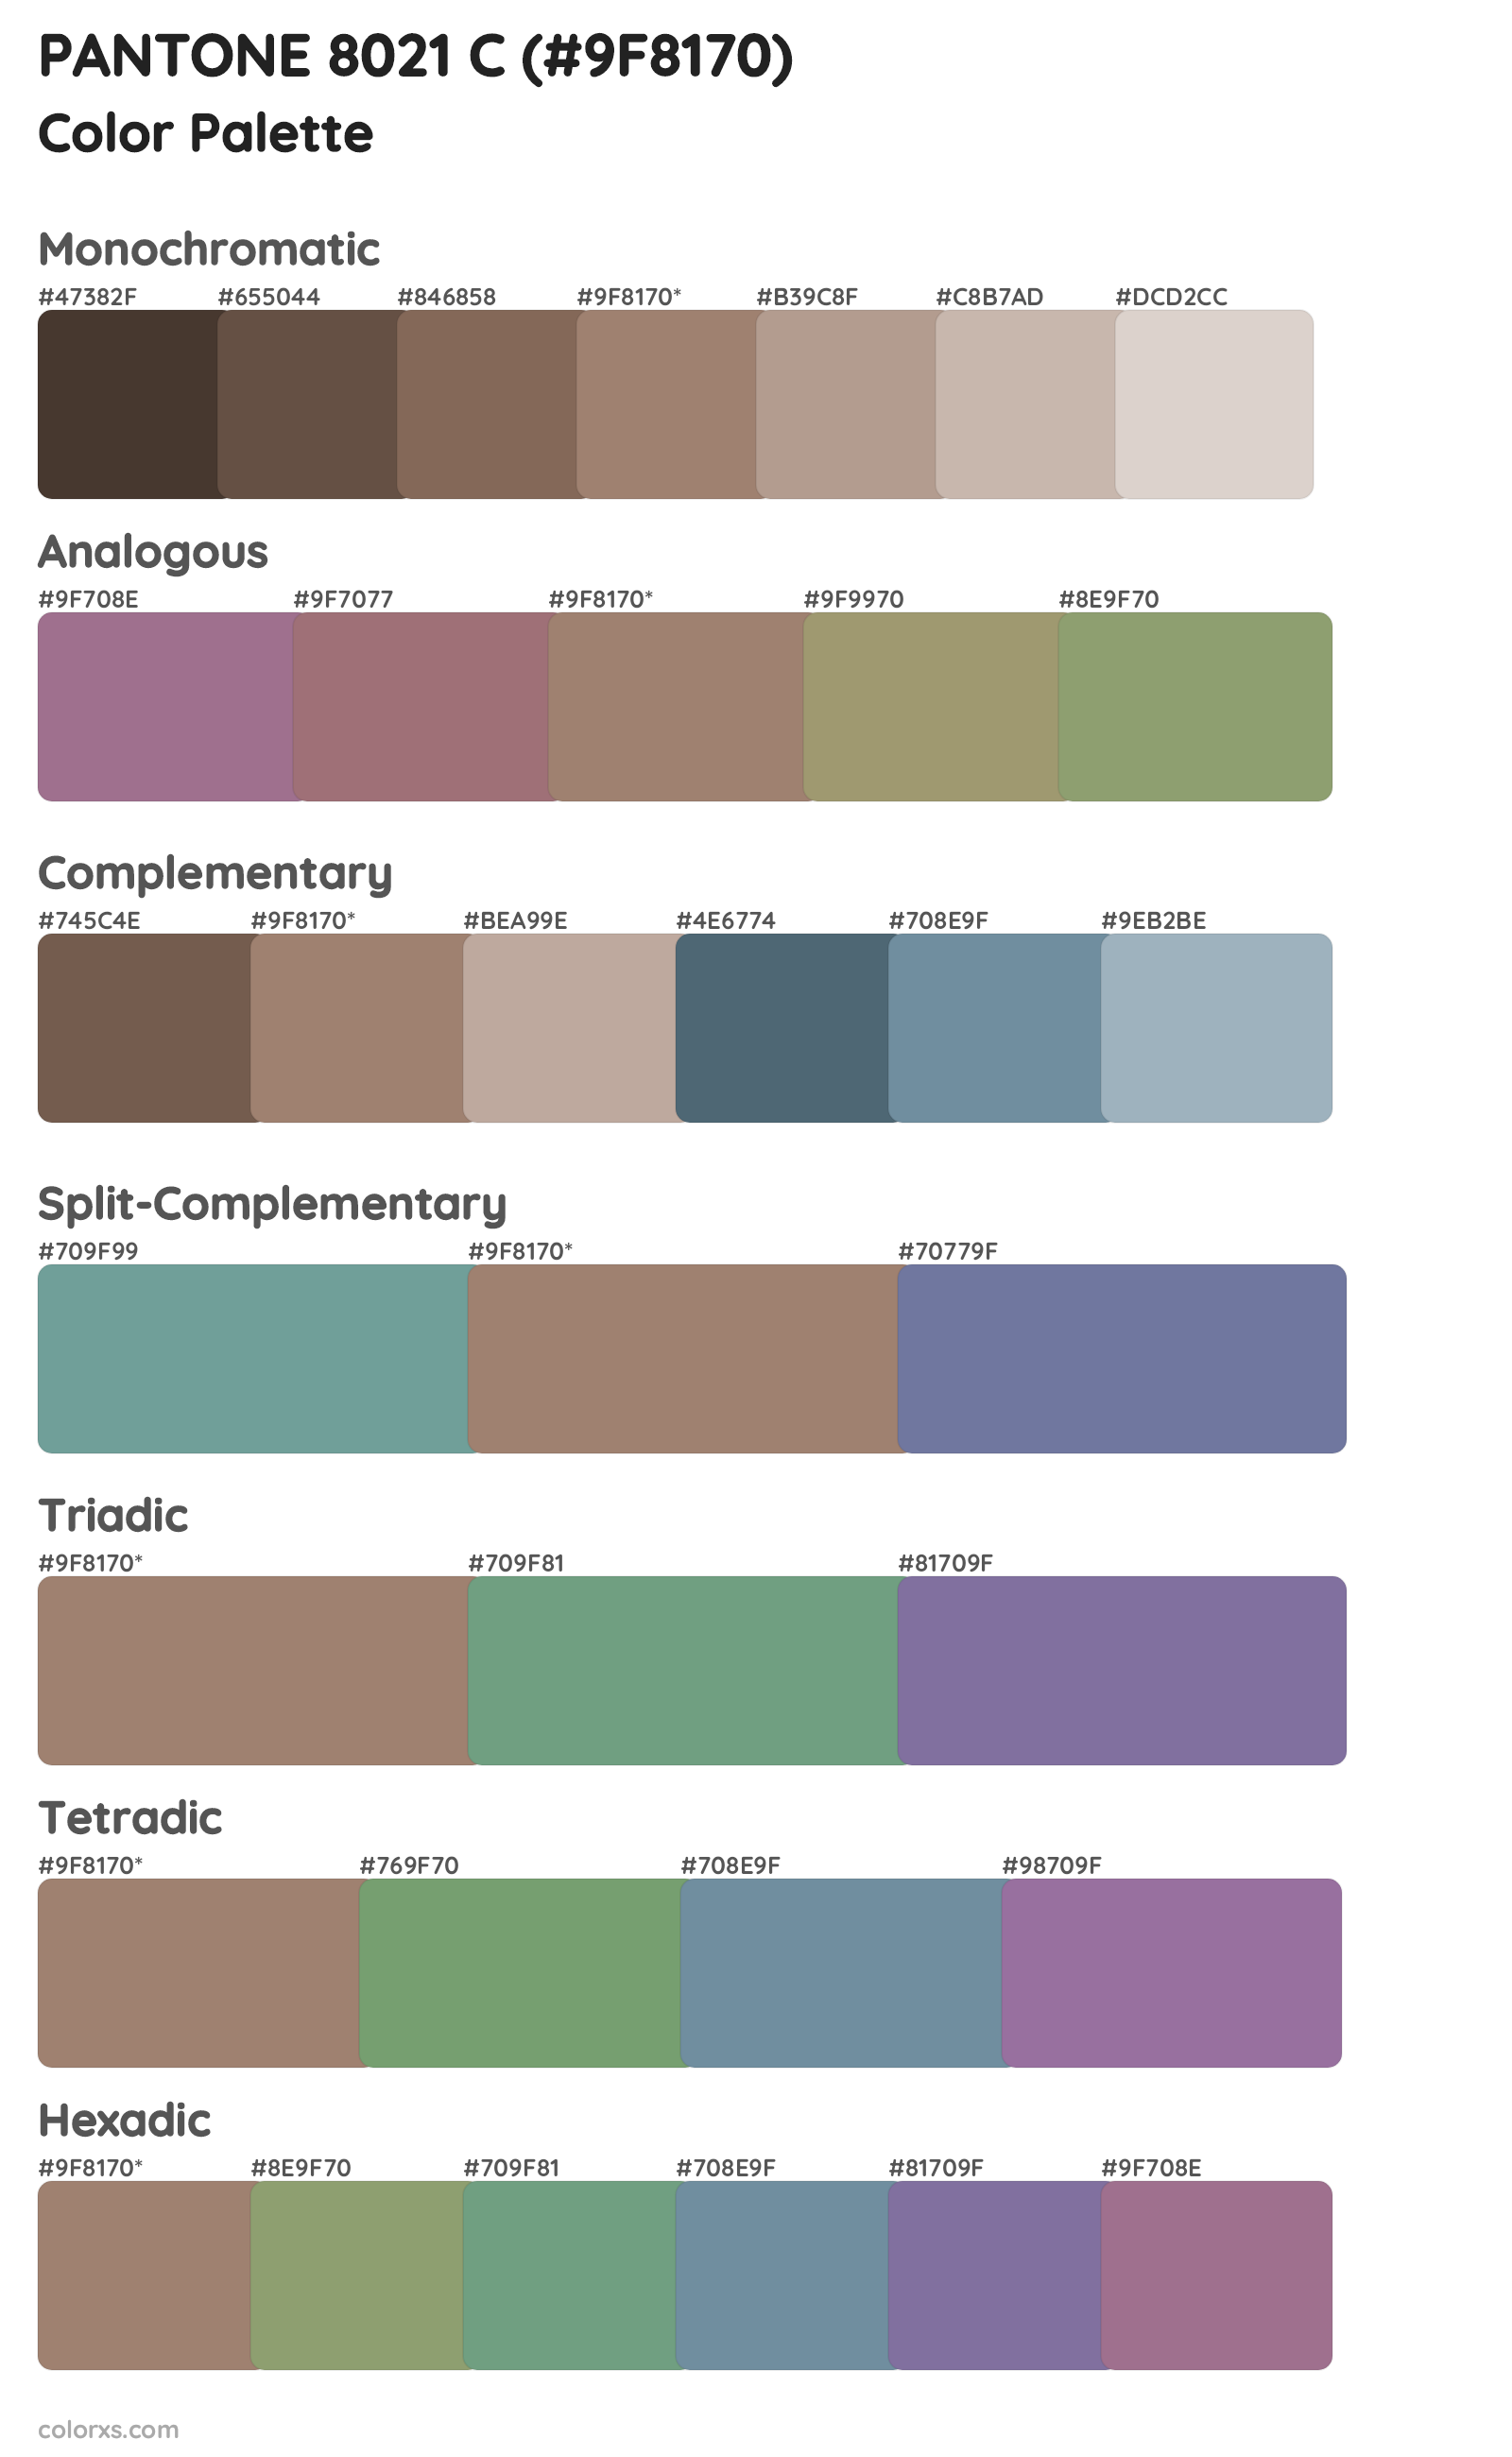 PANTONE 8021 C Color Scheme Palettes